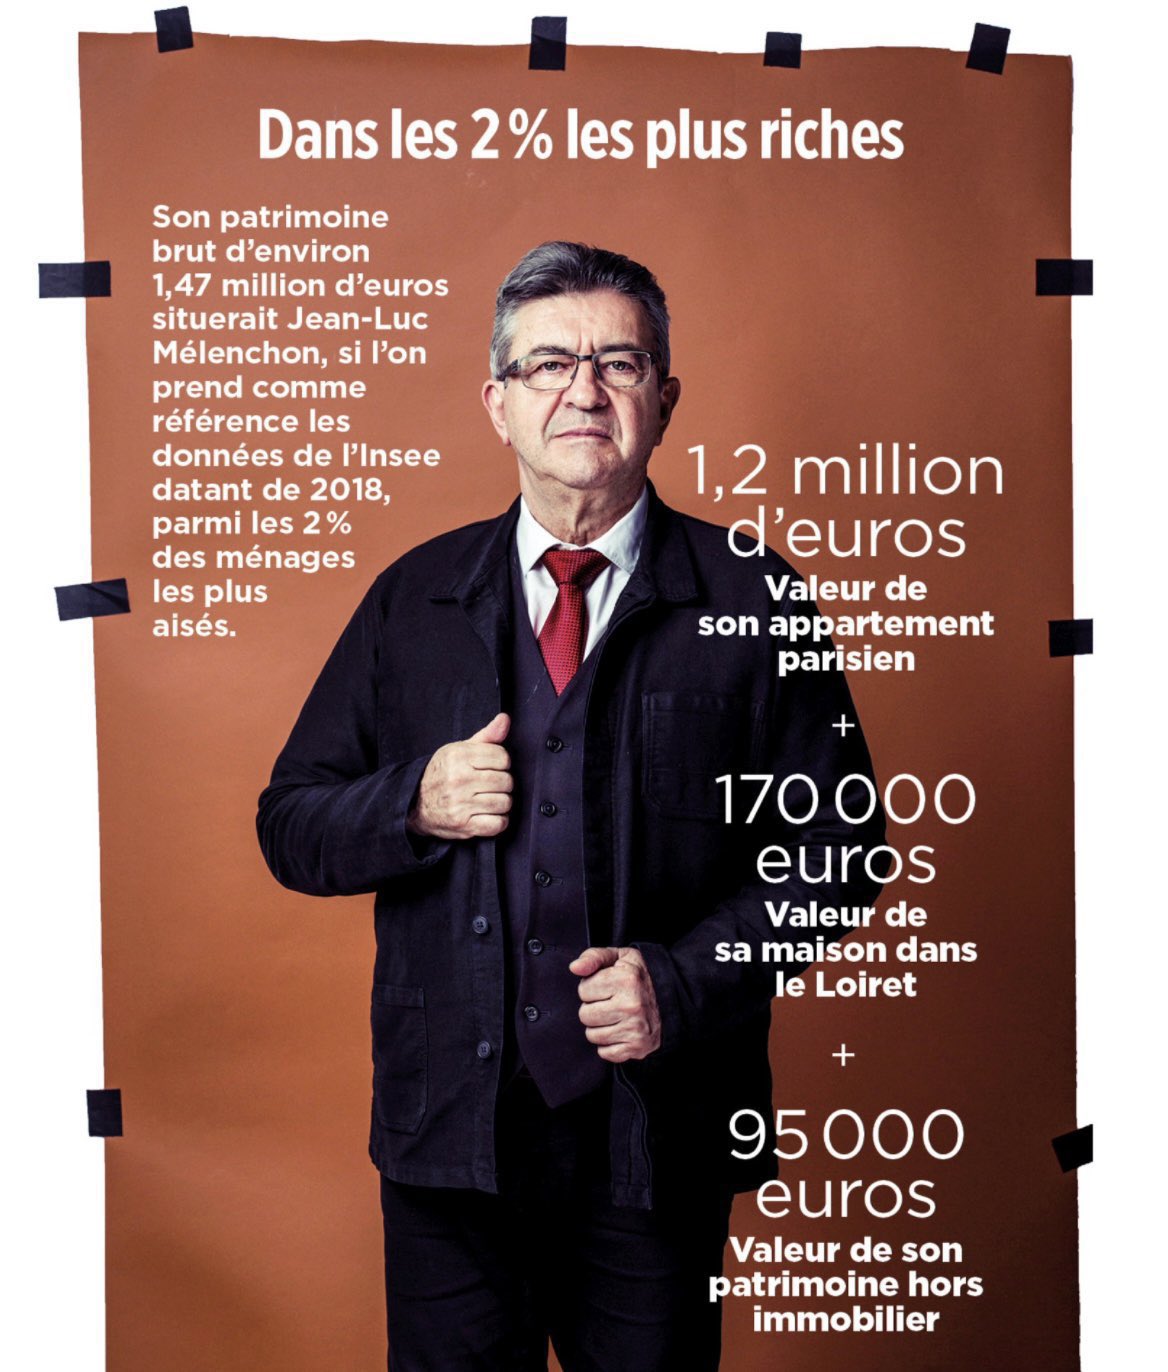 Maxime BOUDET on X: "🚨Un fortuné, détestant les riches, moins riches que  lui. ℹ️ Jean-Luc Mélenchon, dans les 2% des plus riches.  https://t.co/rsLEY1bSz8" / X